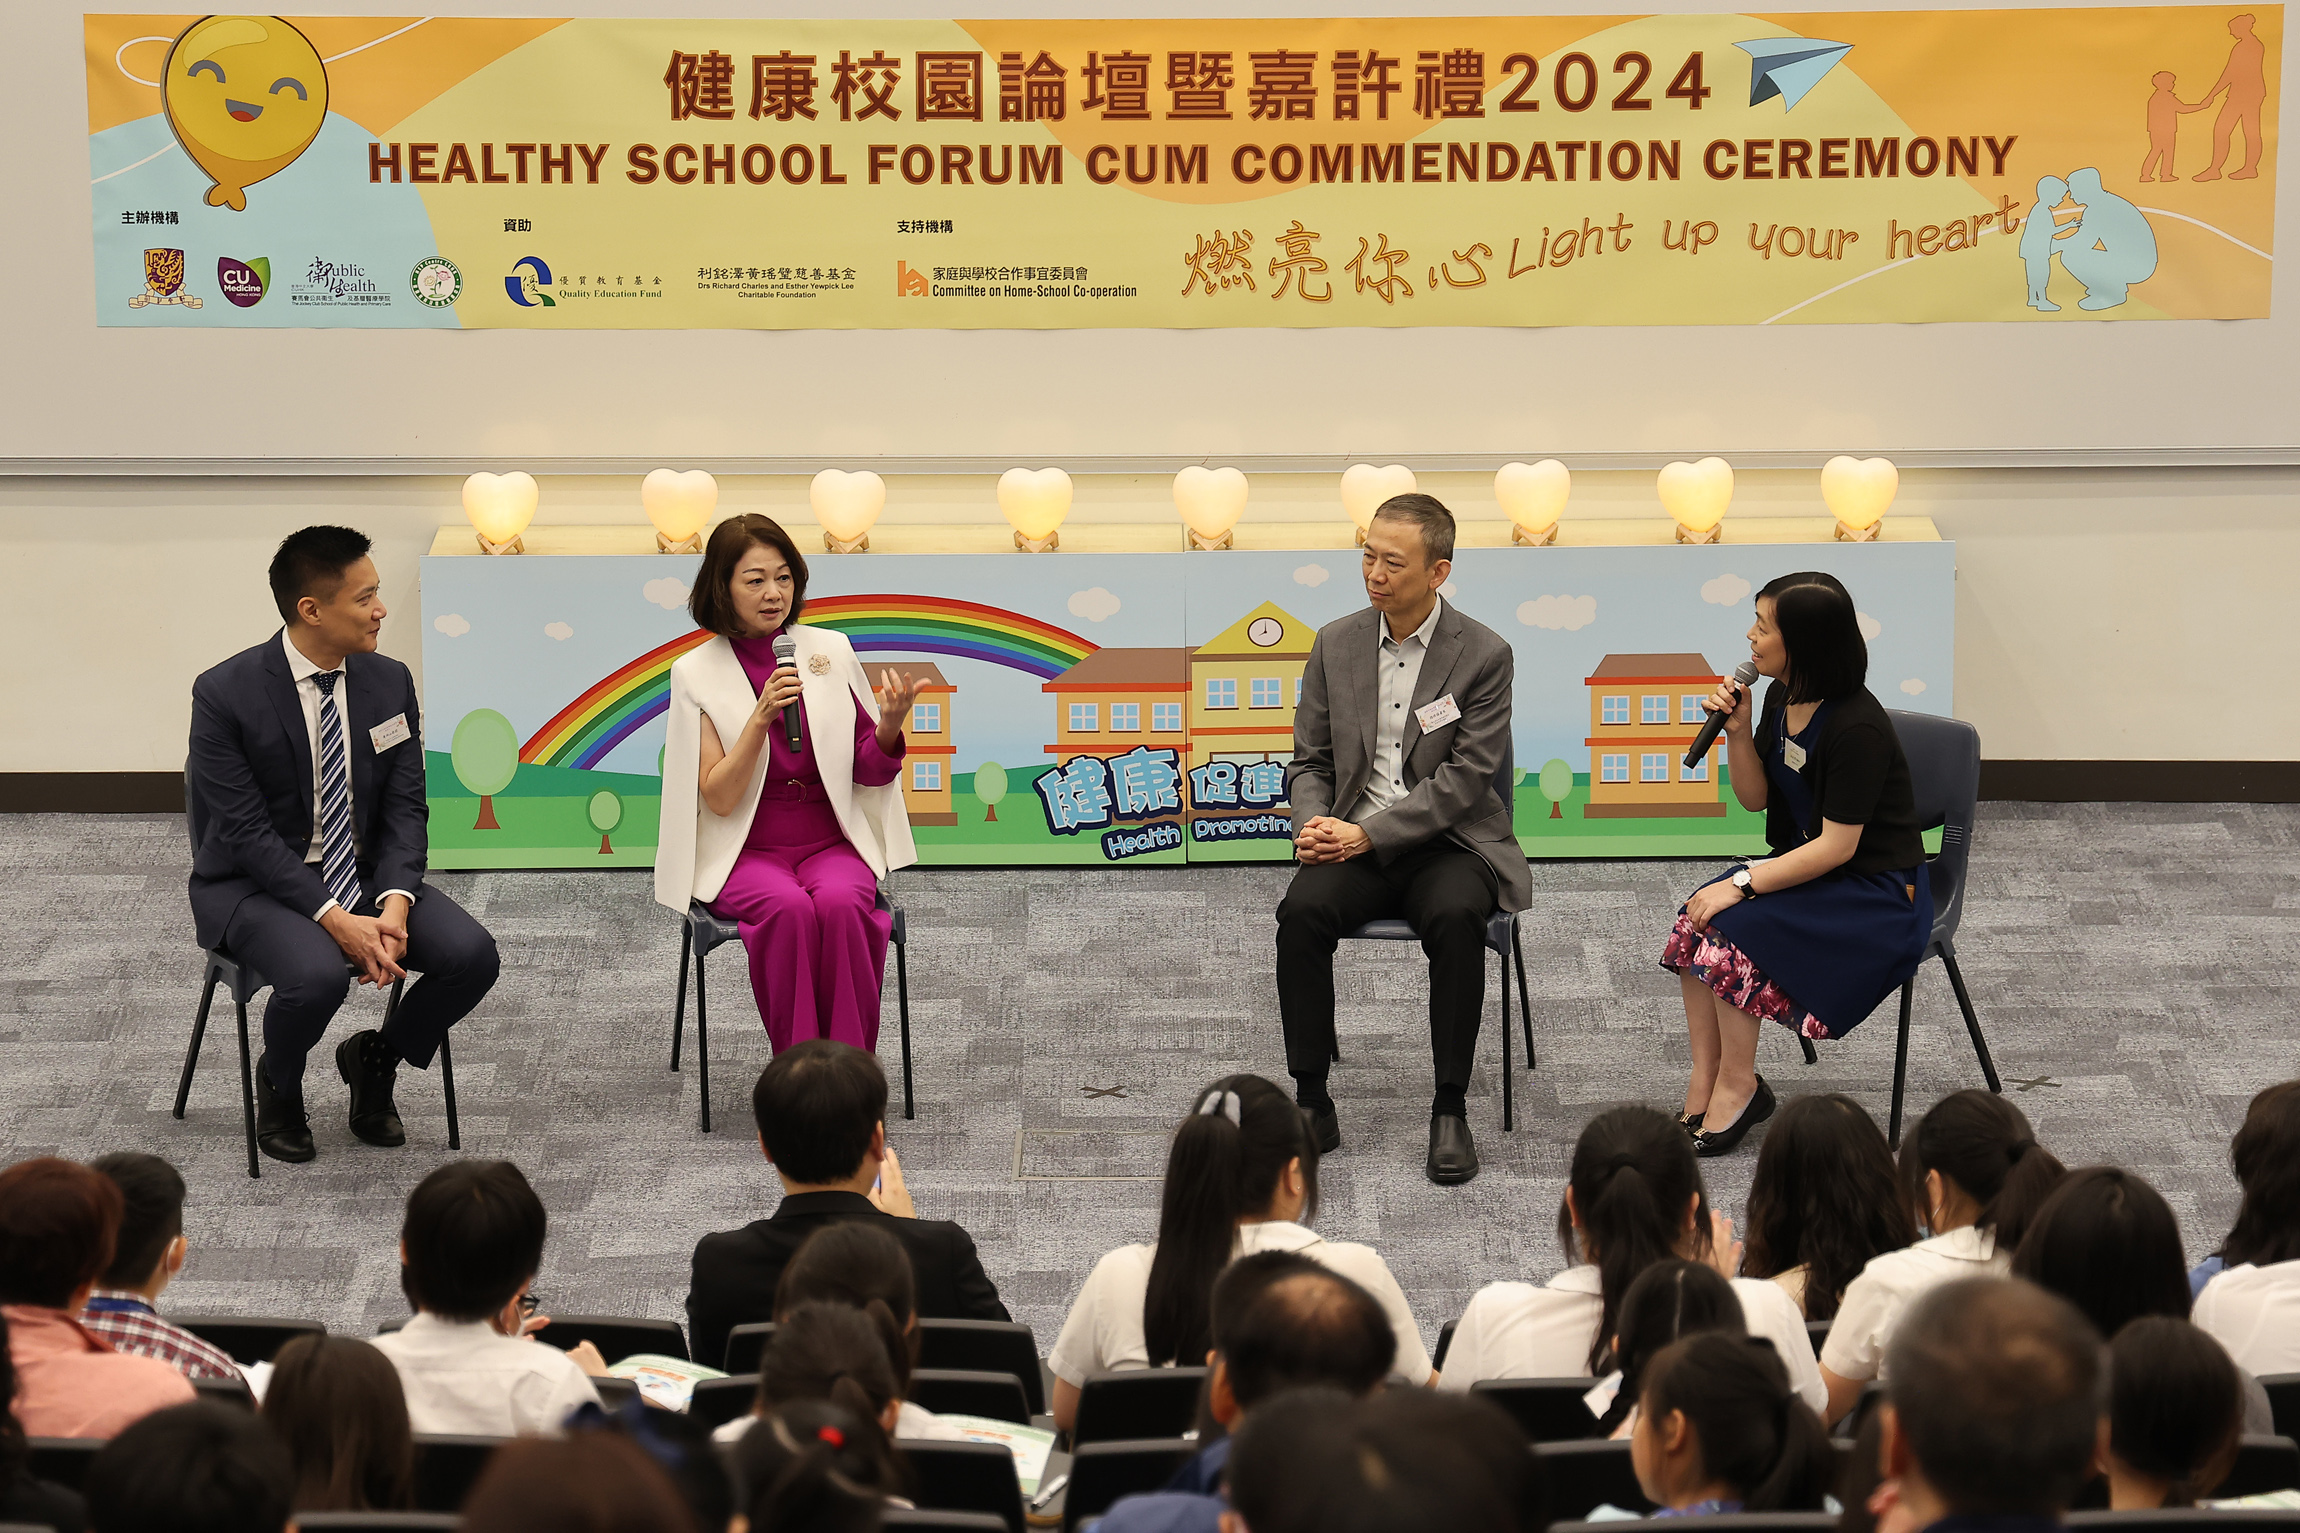 （左起）黄仰山教授、庞爱兰女士及钟伟雄医生就学童精神健康议题交流看法，从常见的精神健康问题谈起，引申至学校的健康促进工作。 